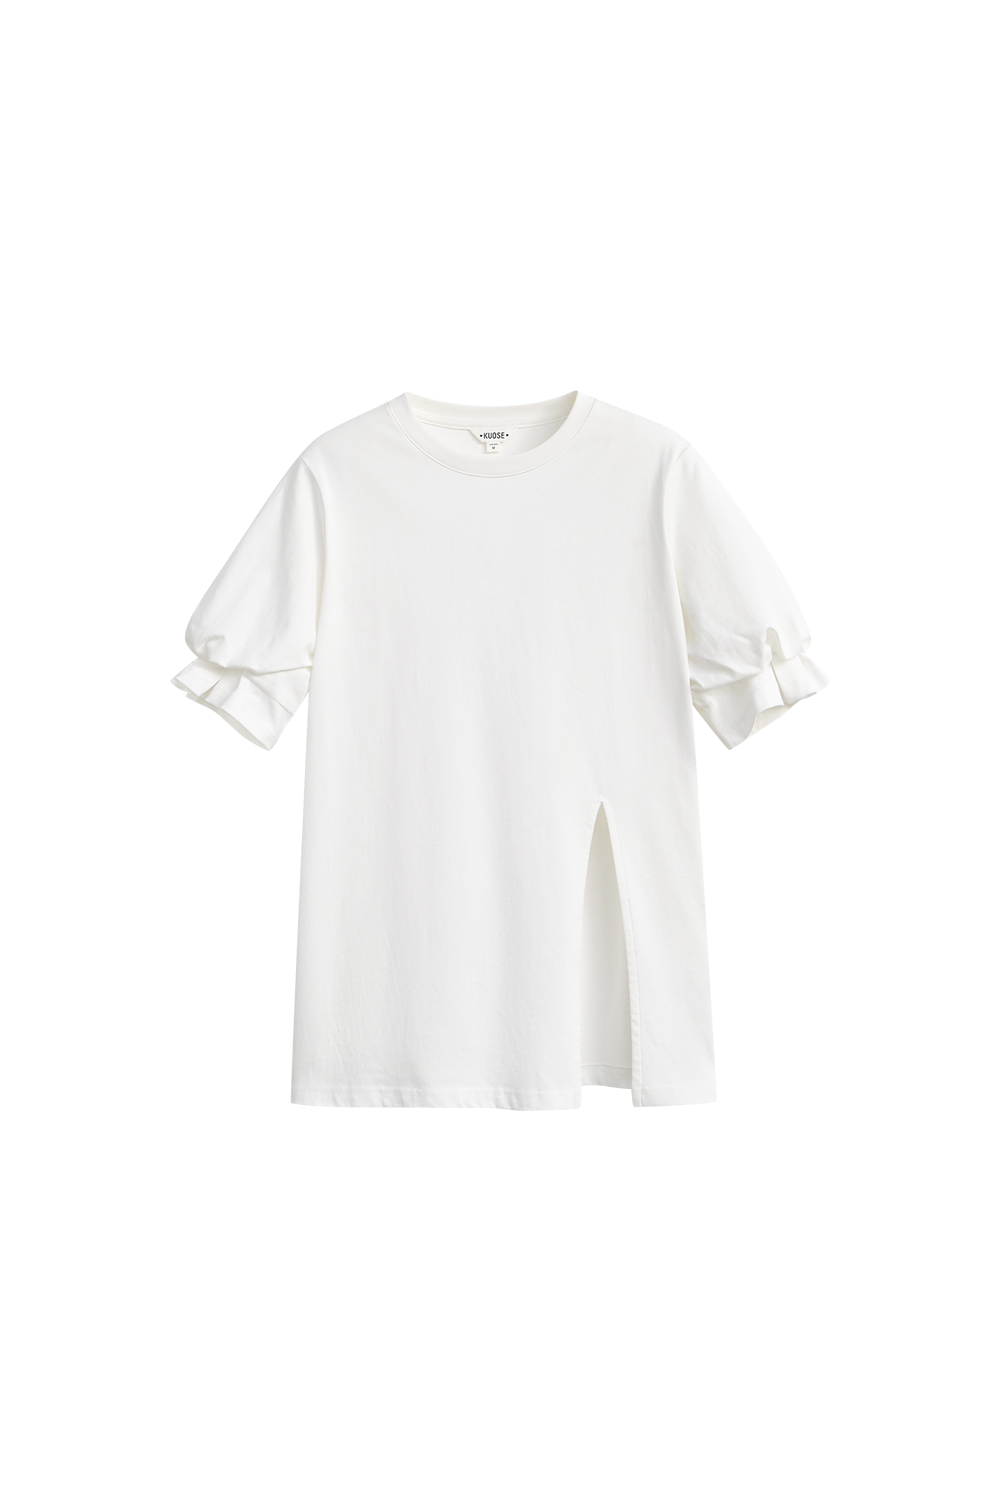 Spring Summer lantern sleeves round neck white t-shirt niche split top